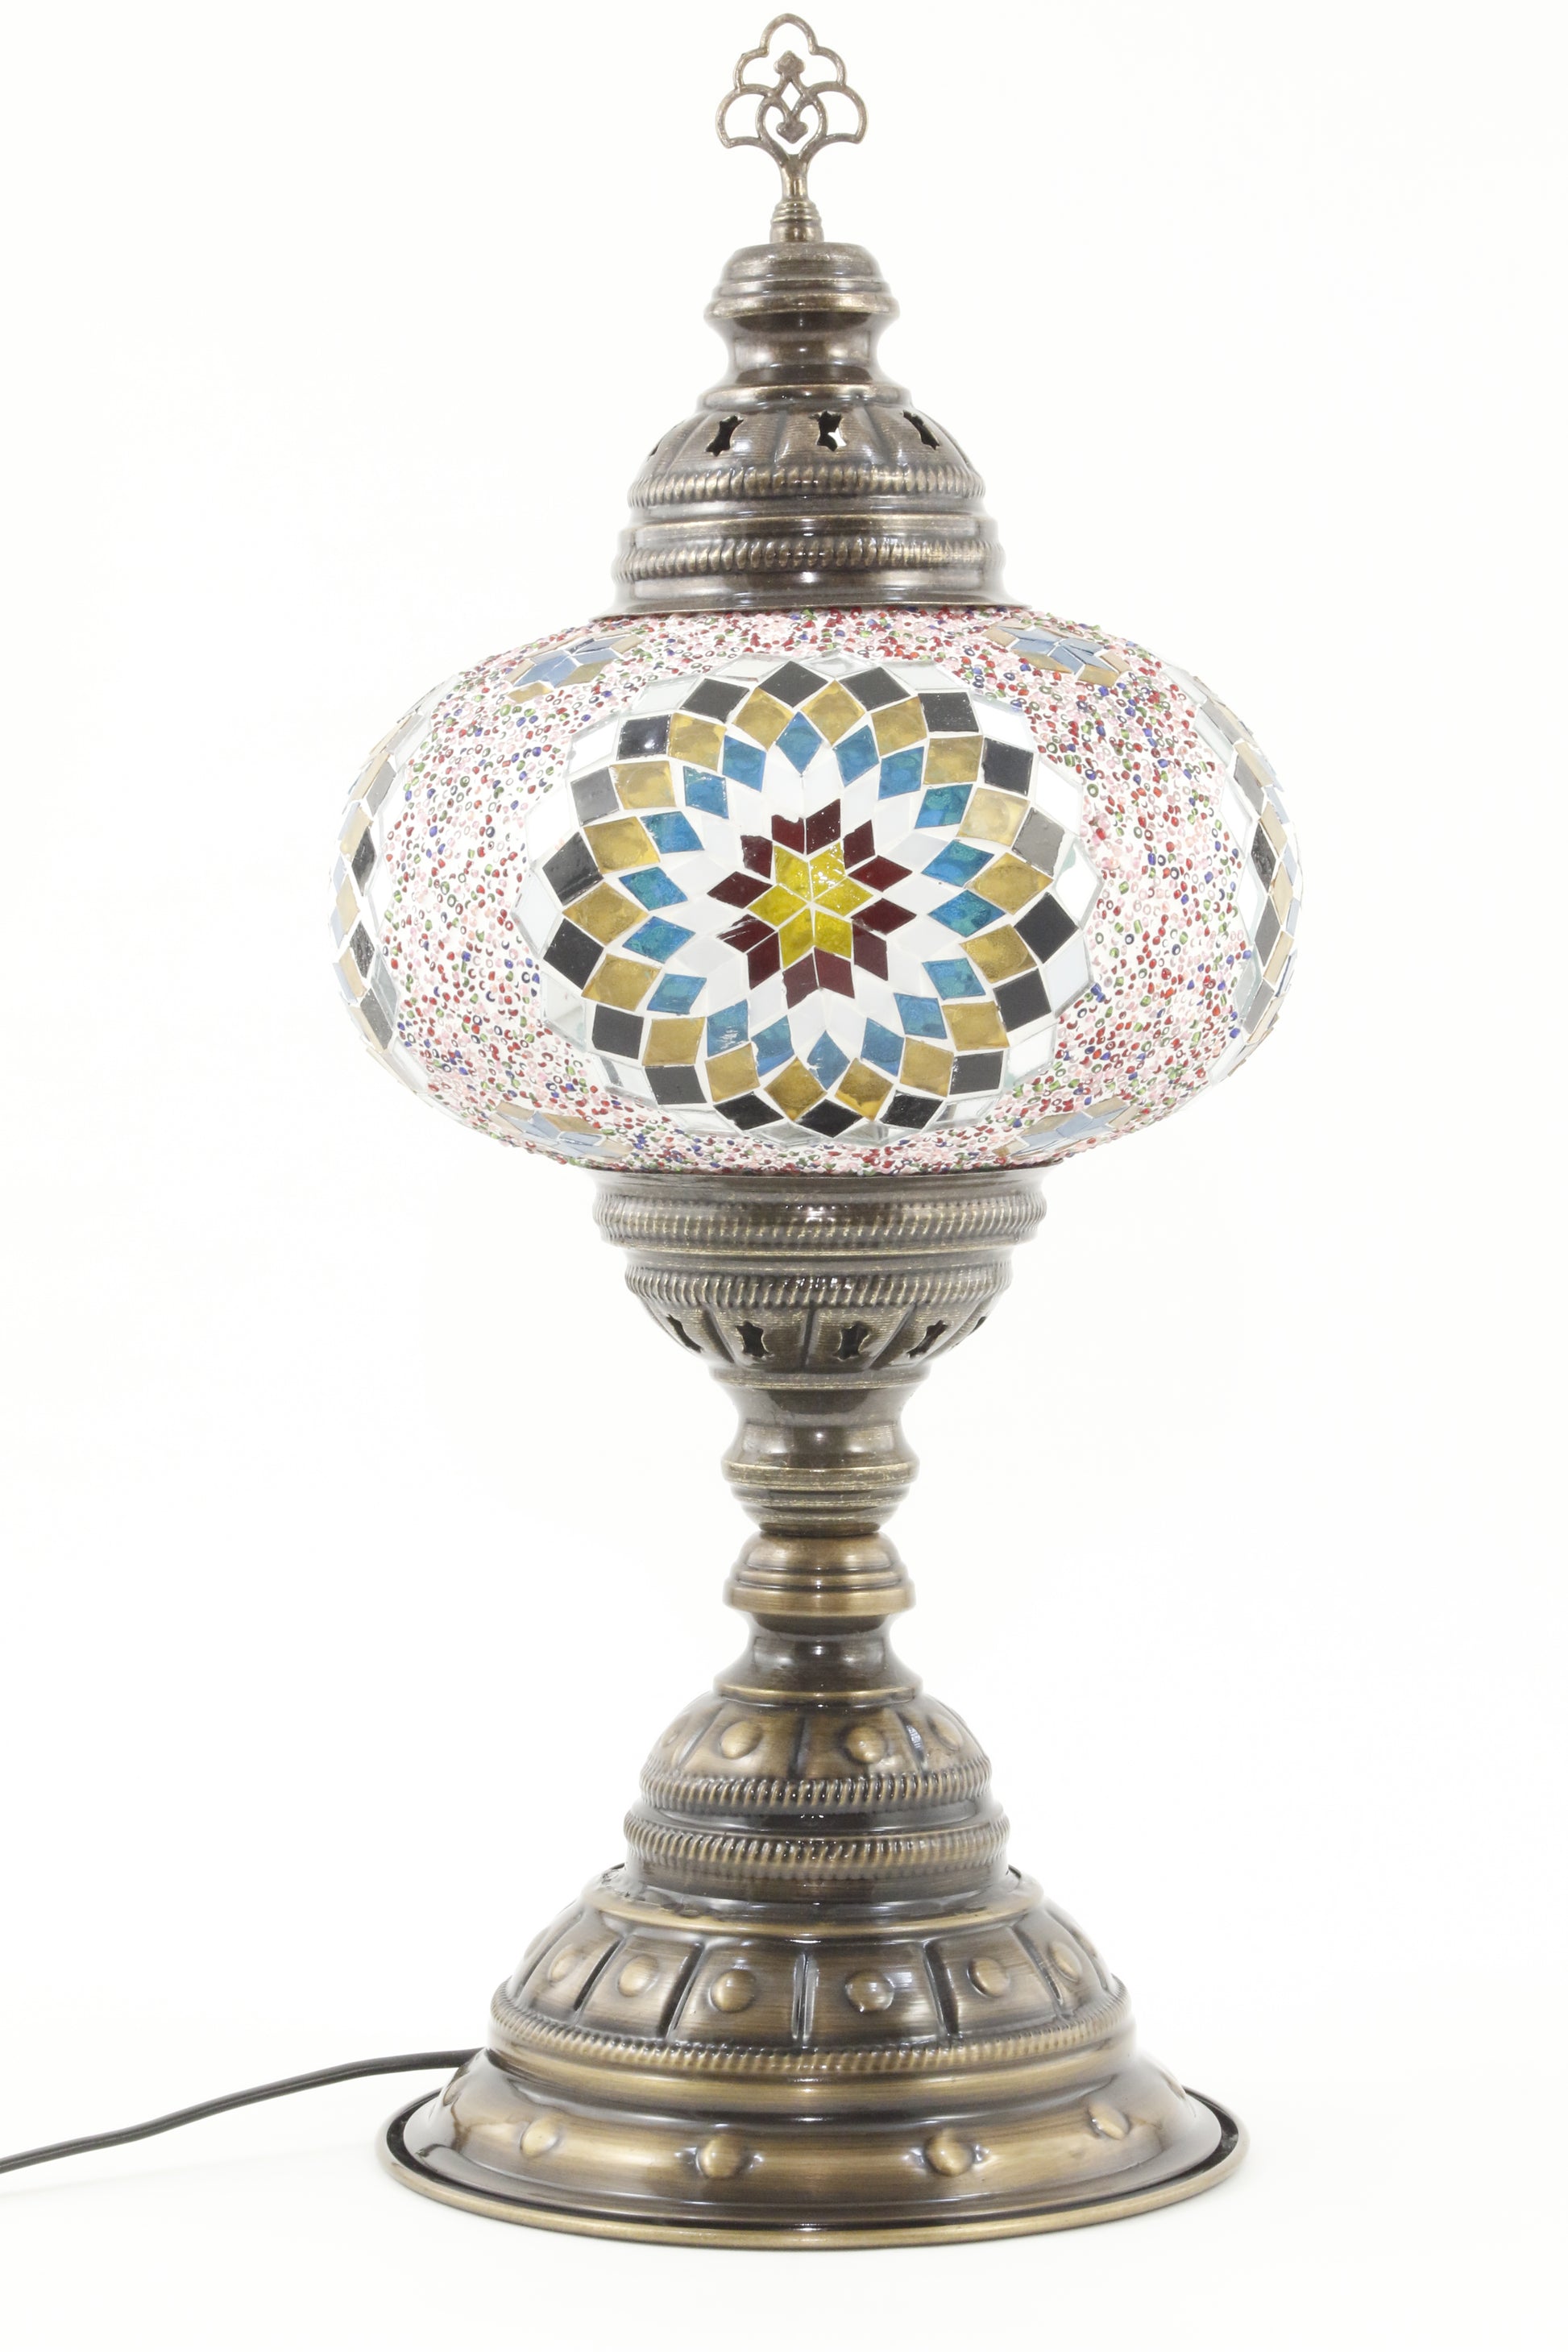 TURKISH MOSAIC TABLE LAMP MB4 RAINBOW-TURNED OFF